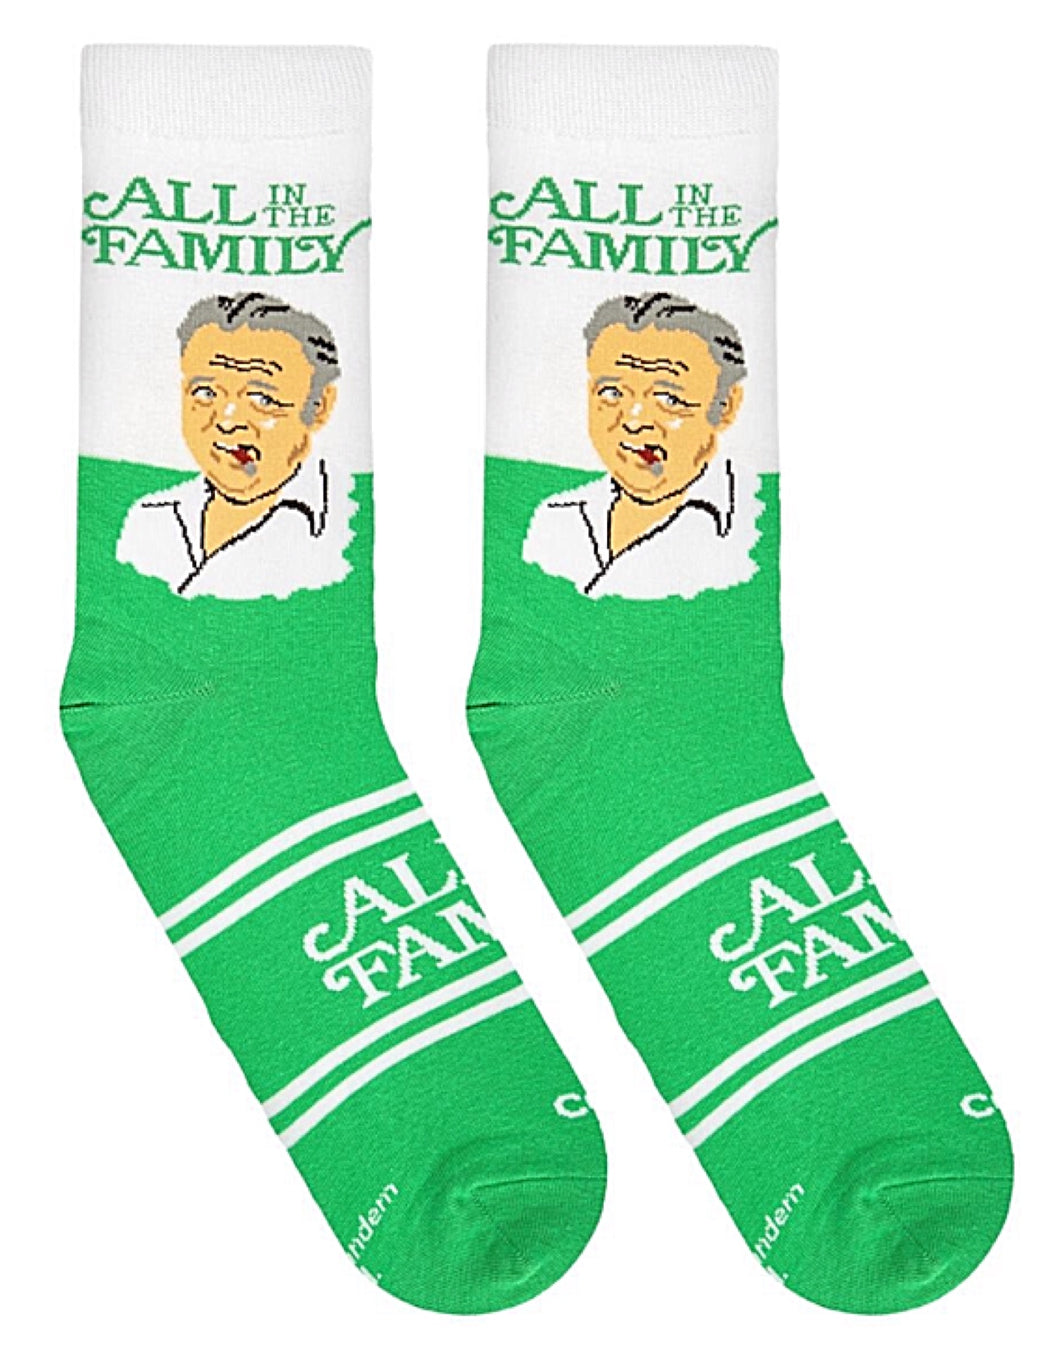 Cool Socks | Novelty Socks for Less